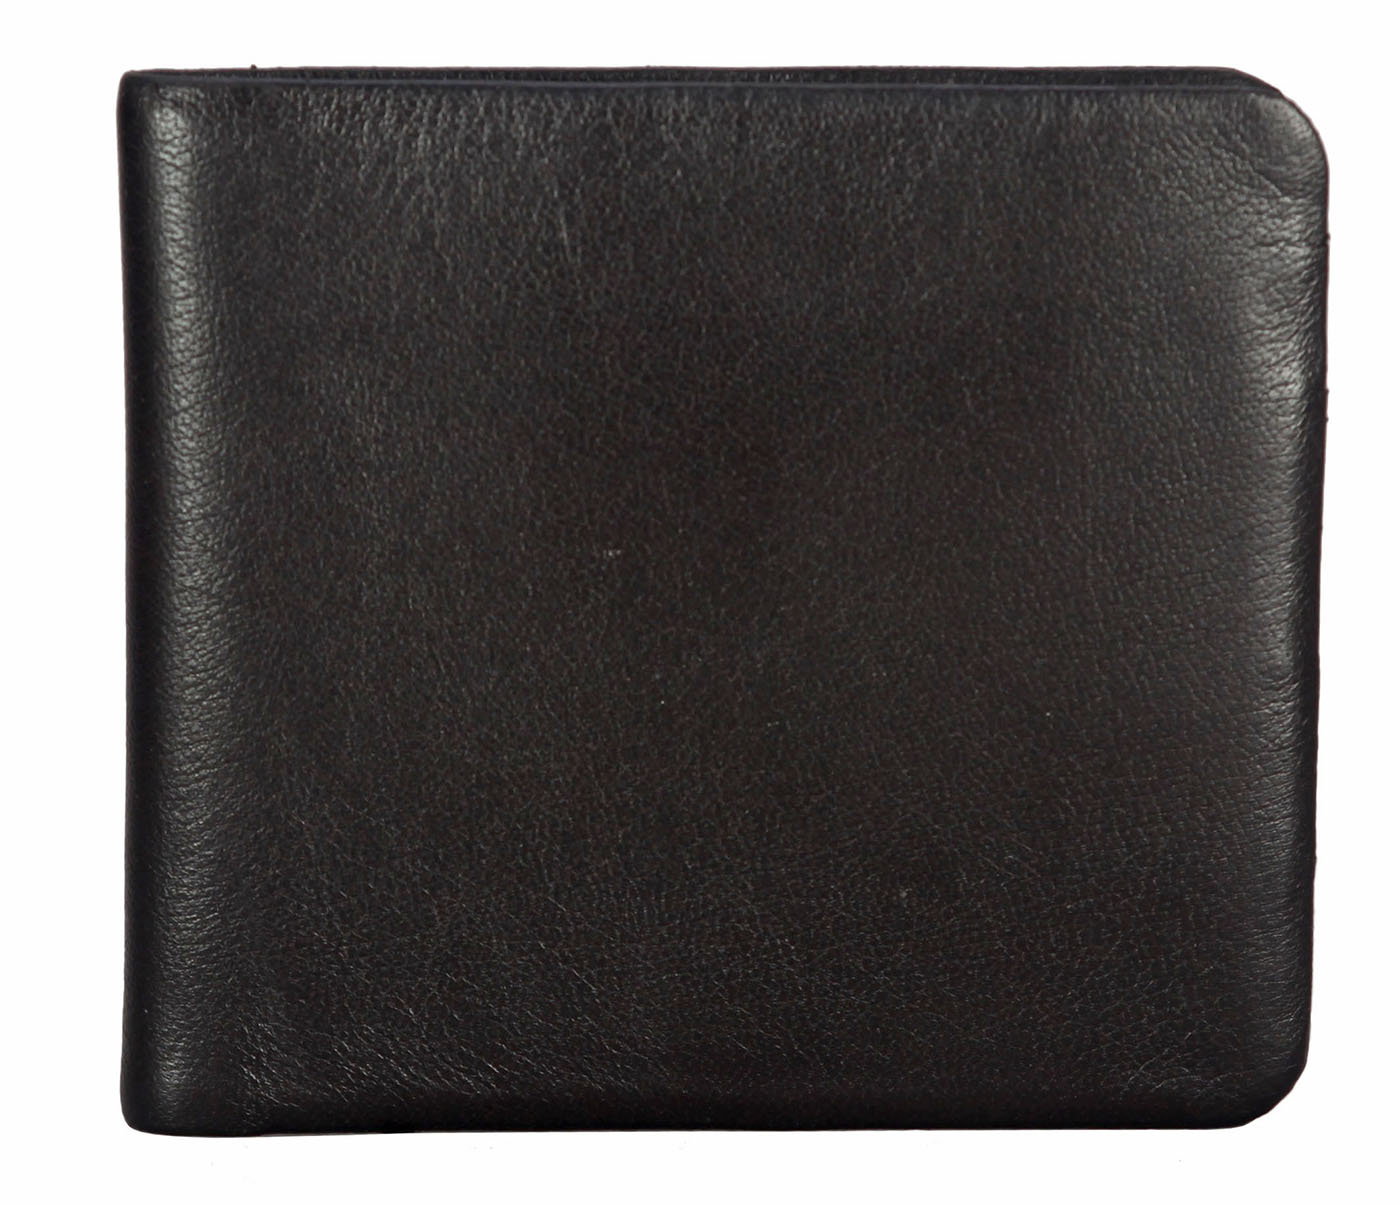 VW18-Diego-Men's bifold sleek wallet in Genuine Leather - Brown